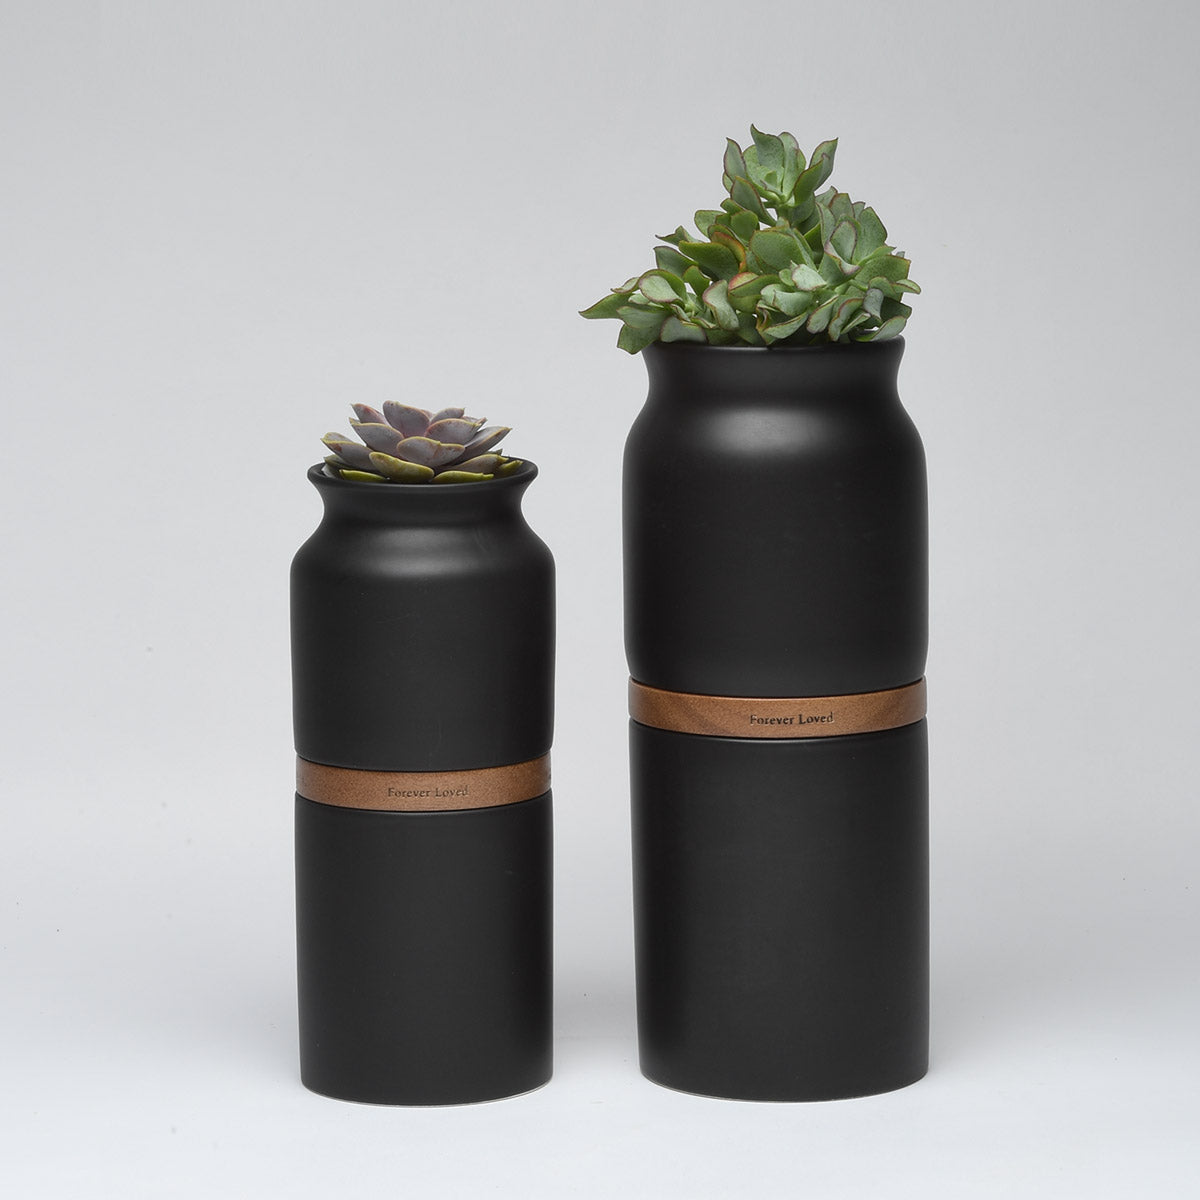 Vega Vase Urn in Black With Dark Wood